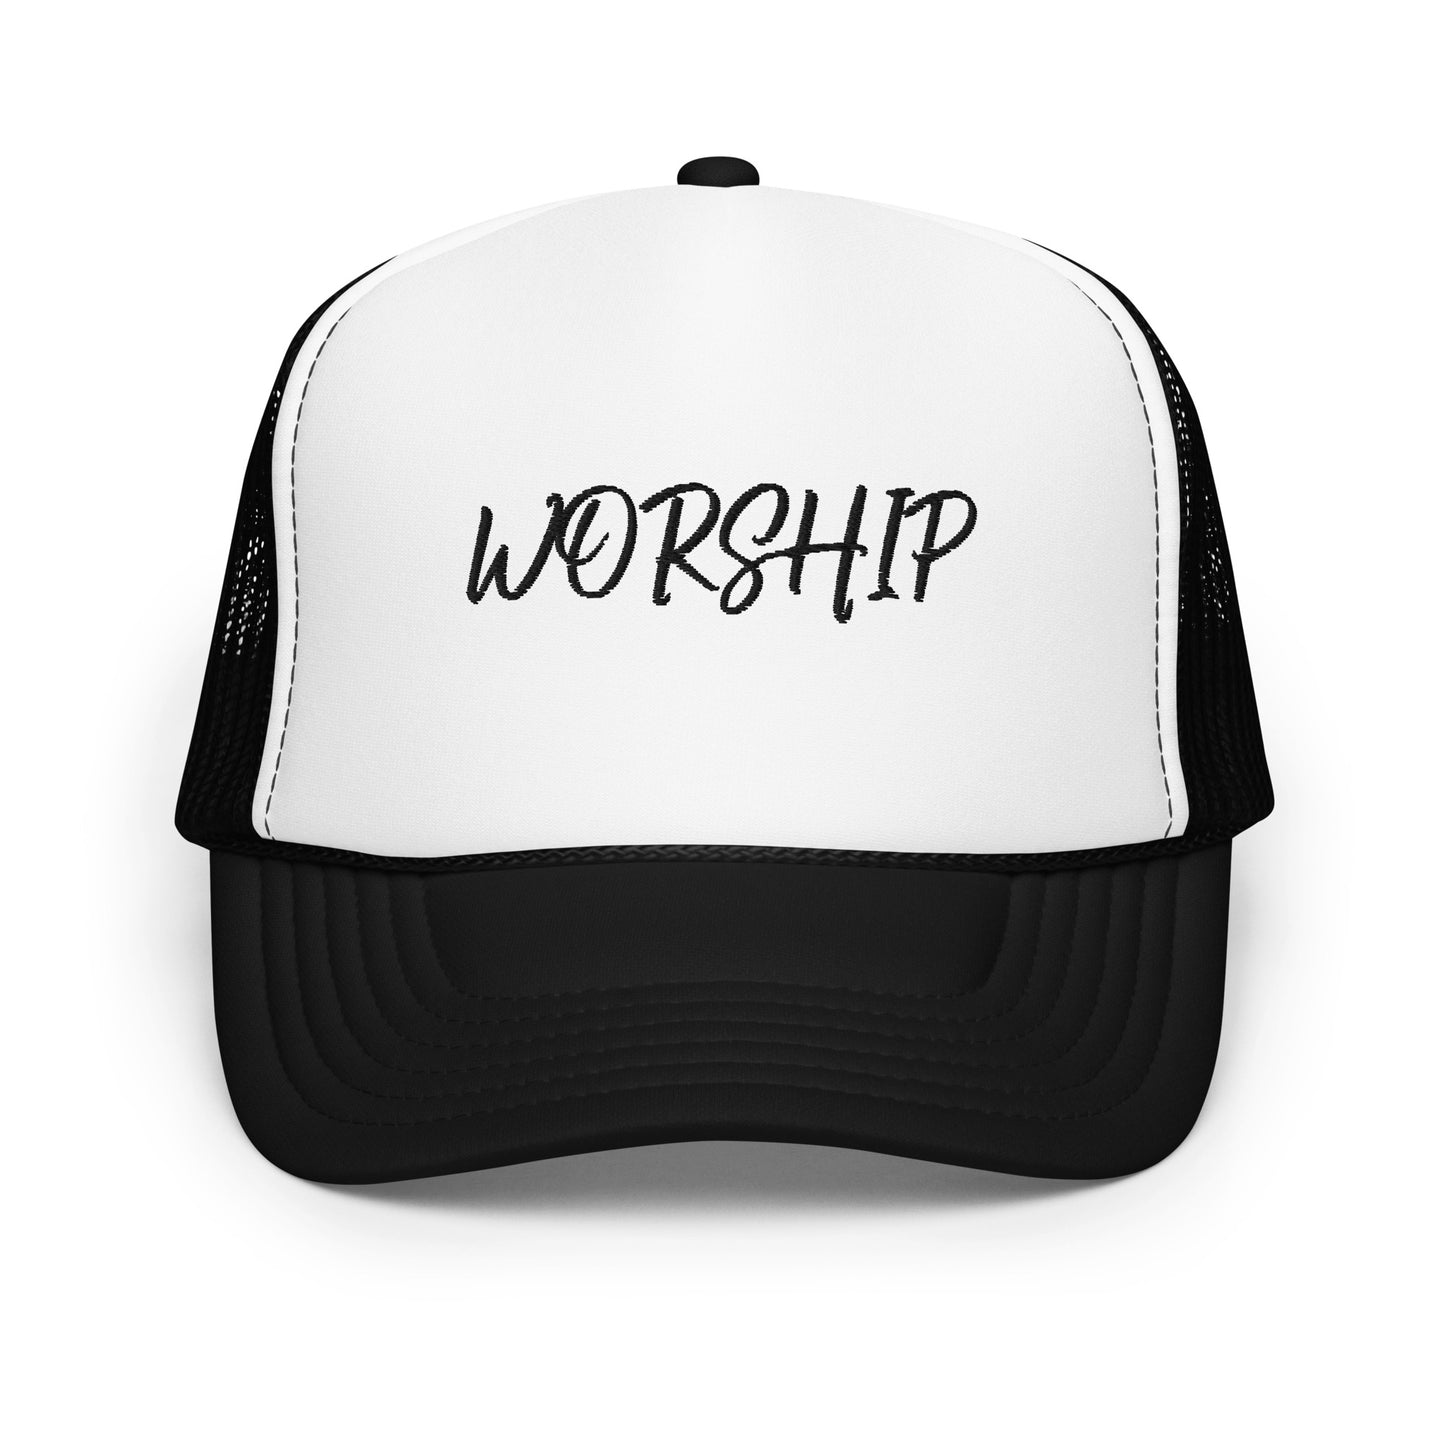 Foam trucker hat - WORSHIP